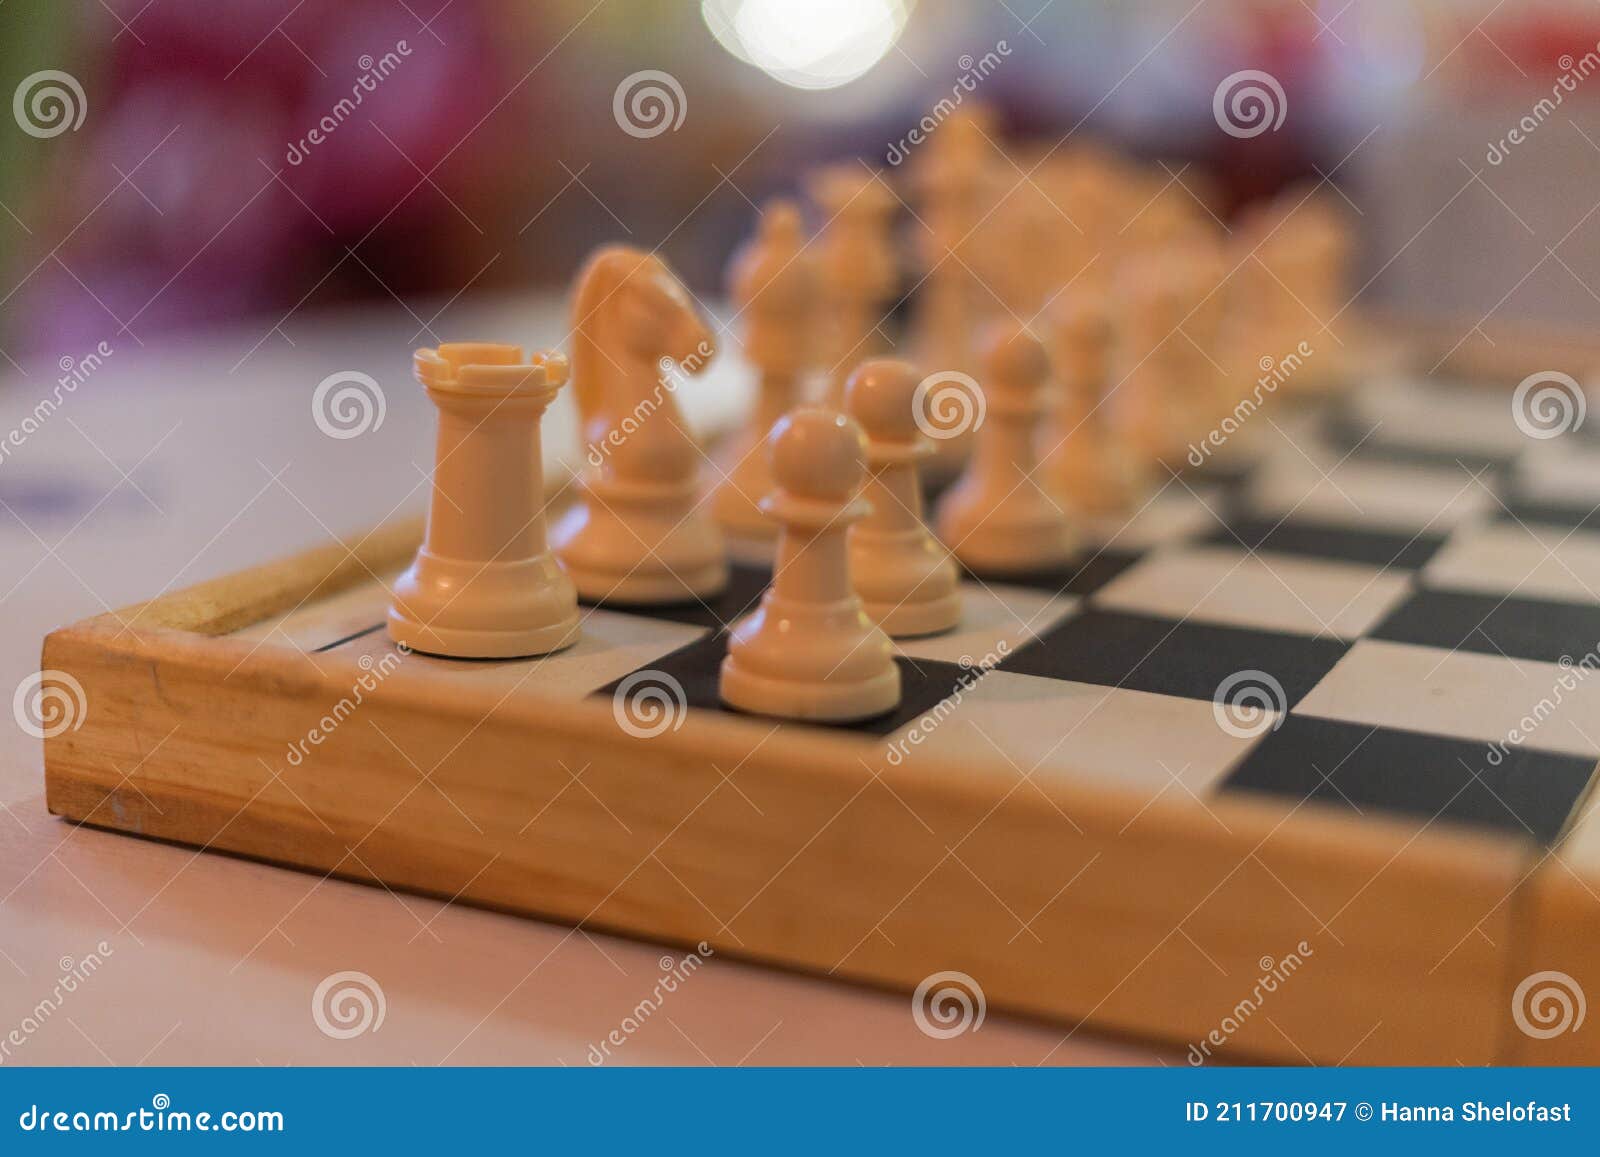 Jogo De Tabuleiro De Xadrez Para Ideias E Competição E Estratégia